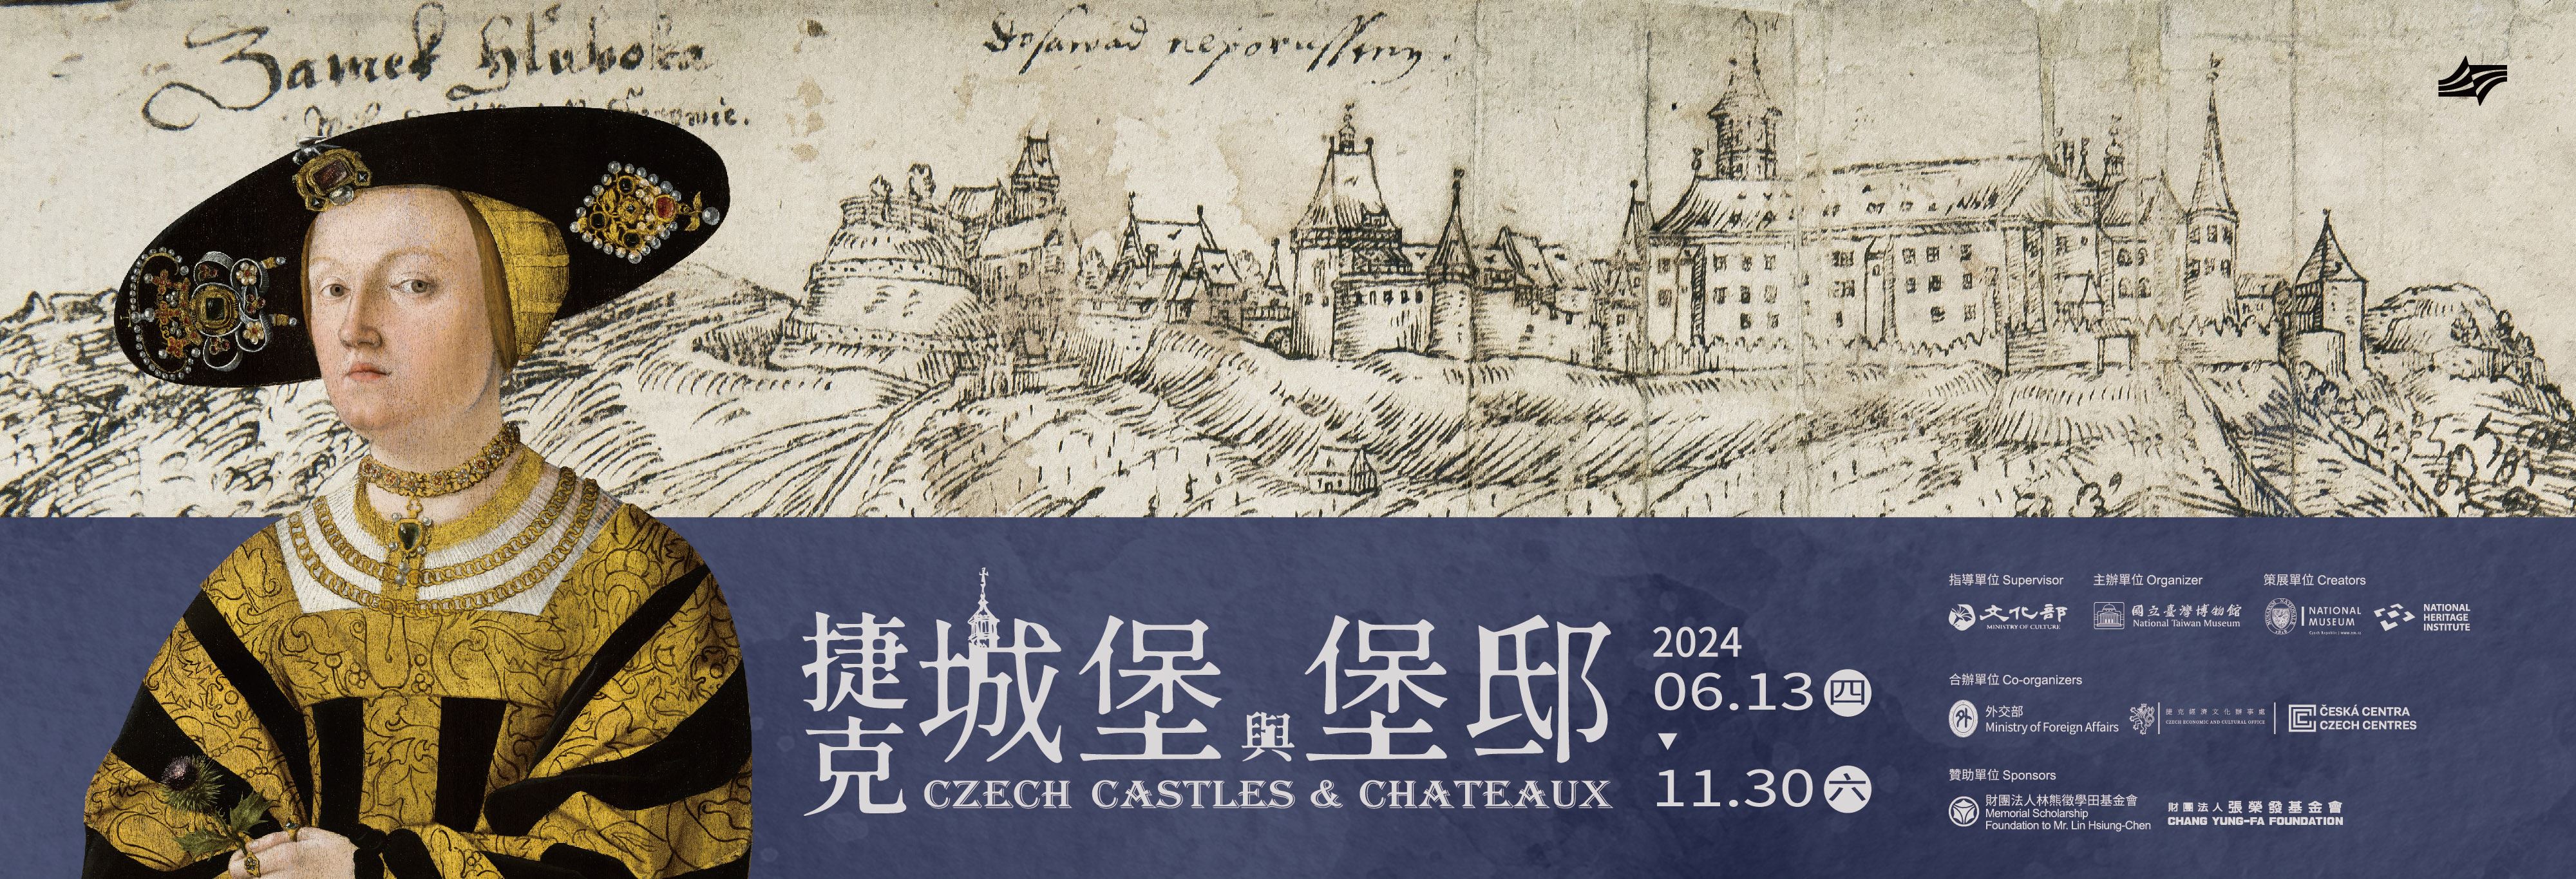 Czech Castles & Chateaux